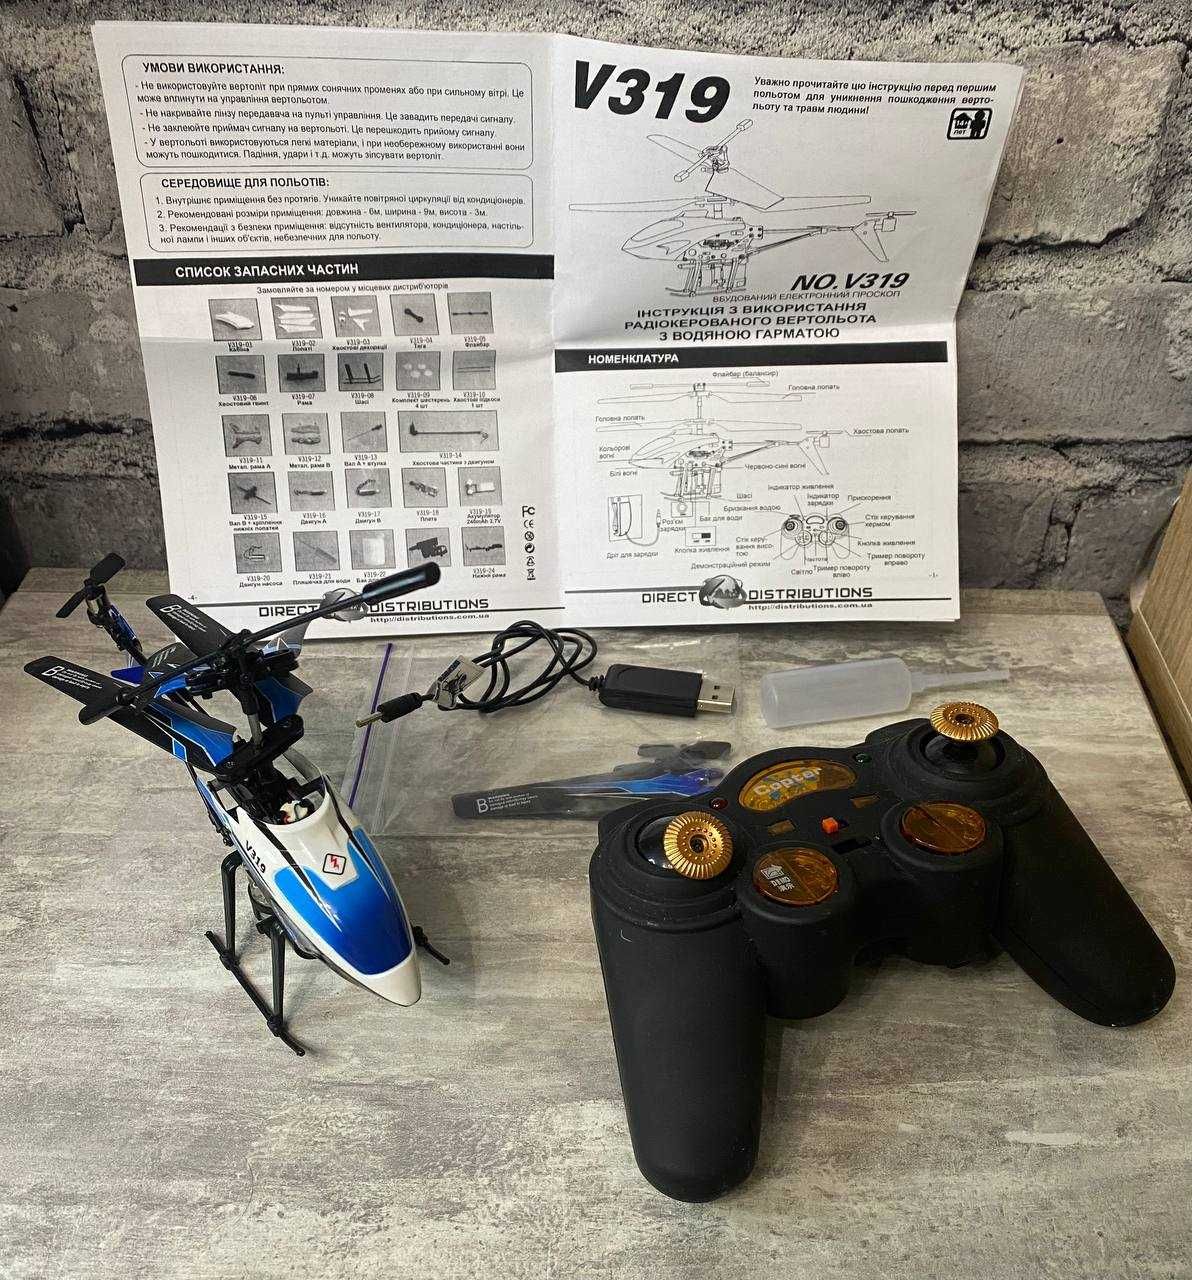 WL Toys V319 ВОДЯНА ПУШКА - радіокерований вертолі, є відео тест